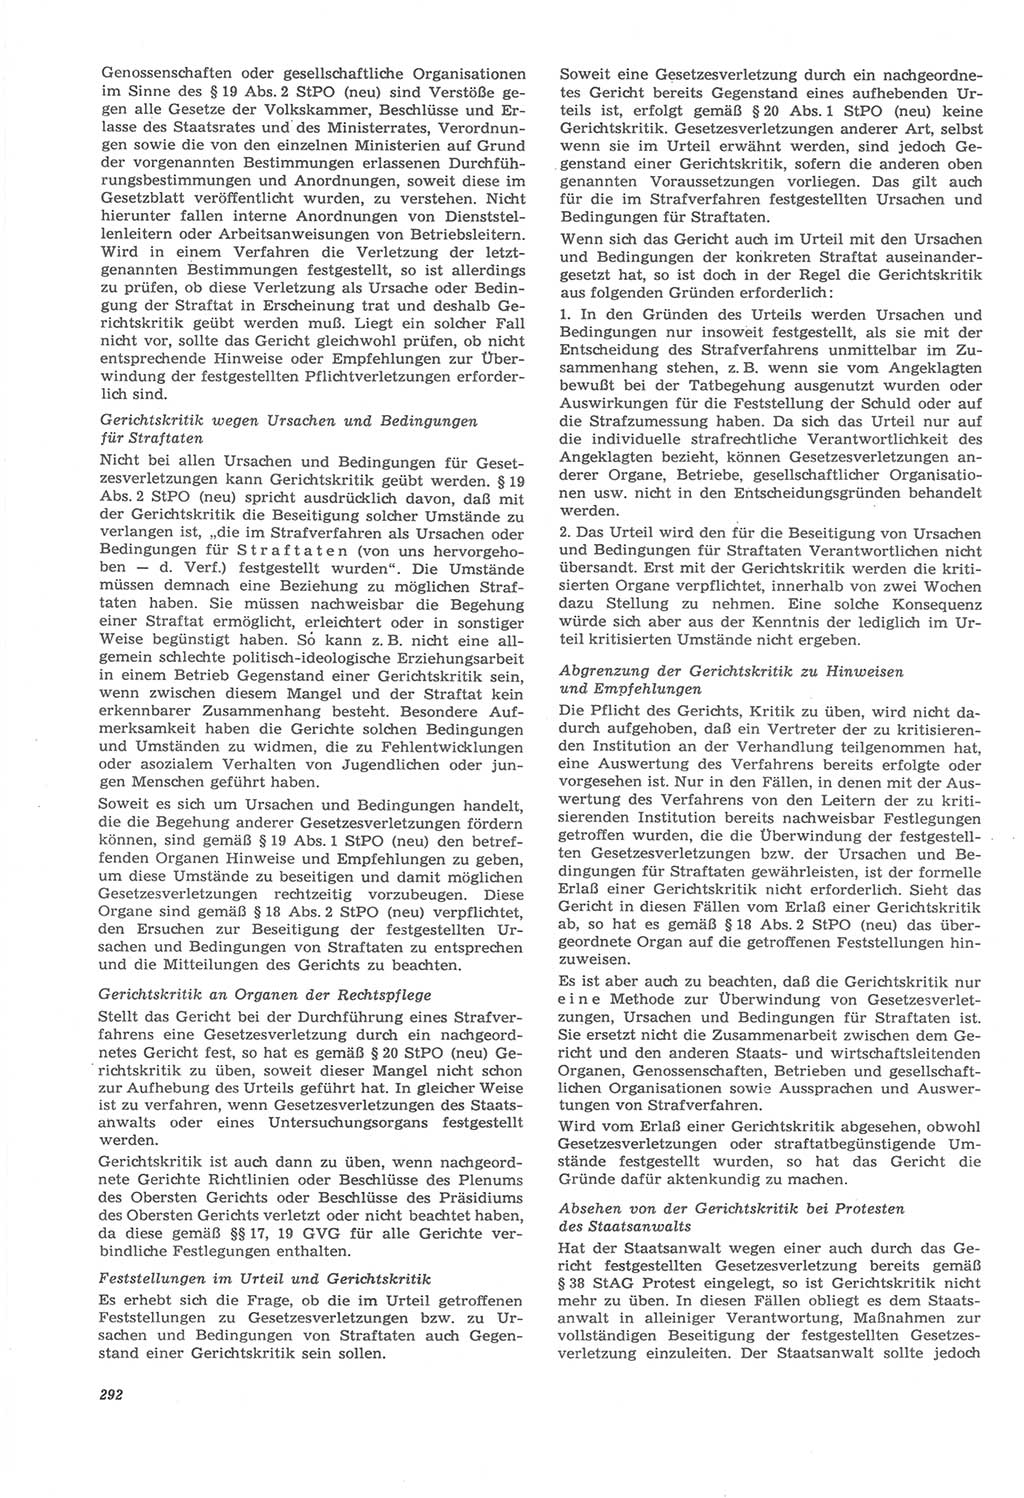 Neue Justiz (NJ), Zeitschrift für Recht und Rechtswissenschaft [Deutsche Demokratische Republik (DDR)], 22. Jahrgang 1968, Seite 292 (NJ DDR 1968, S. 292)